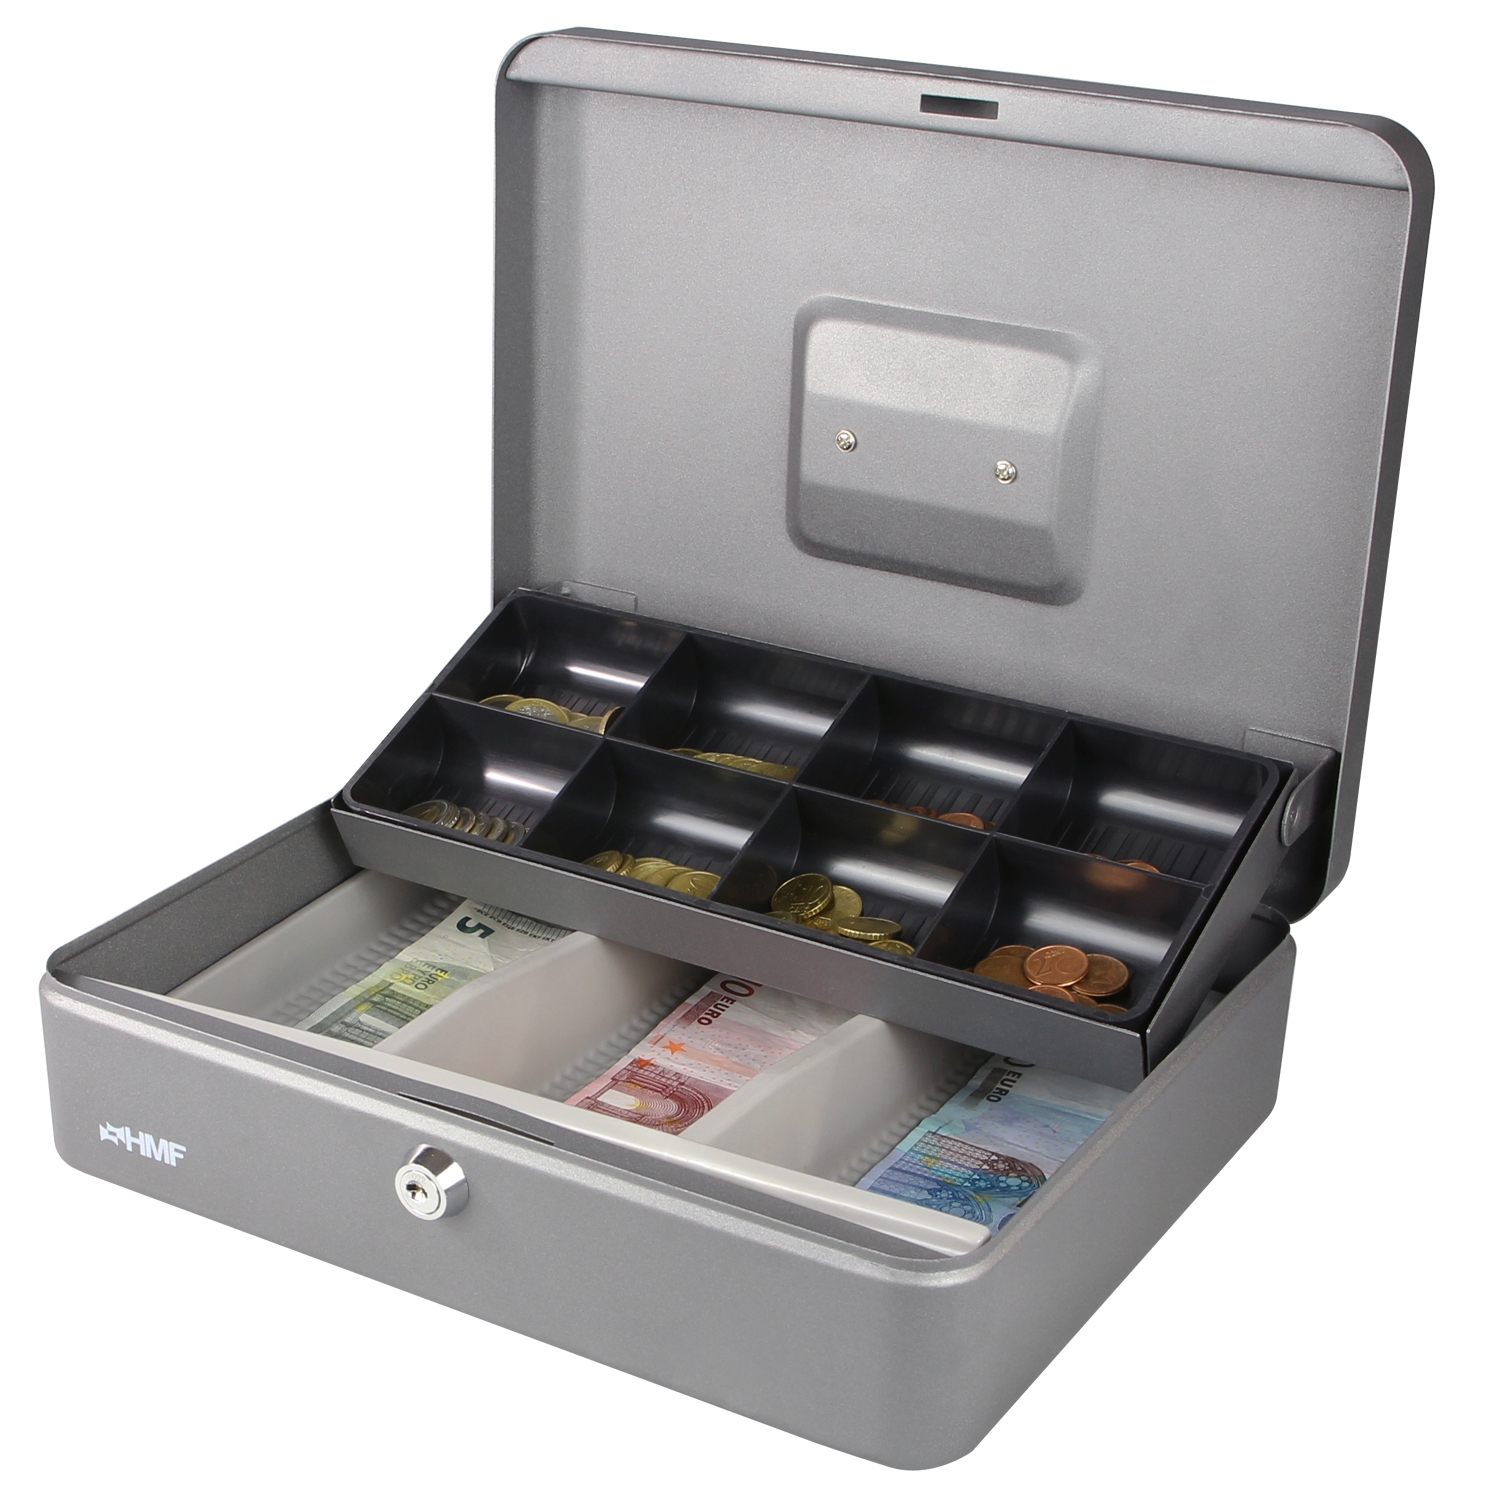 Geldkassette von HMF mit 30 Breite in Silber